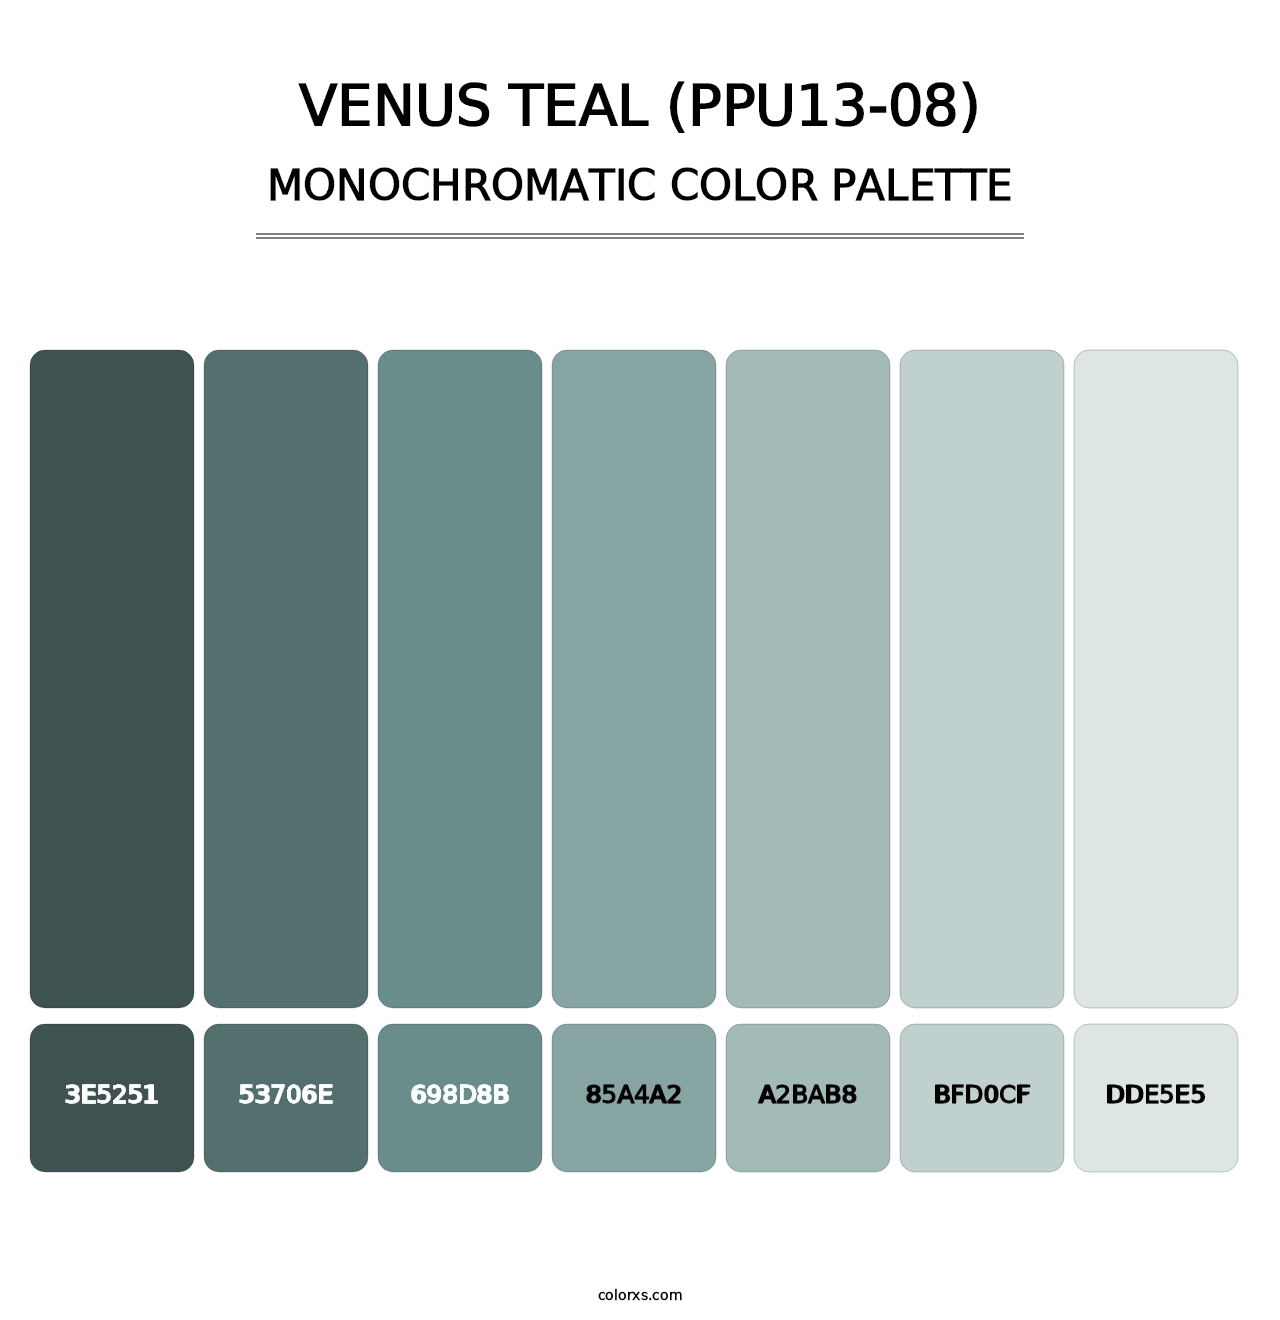 Venus Teal (PPU13-08) - Monochromatic Color Palette